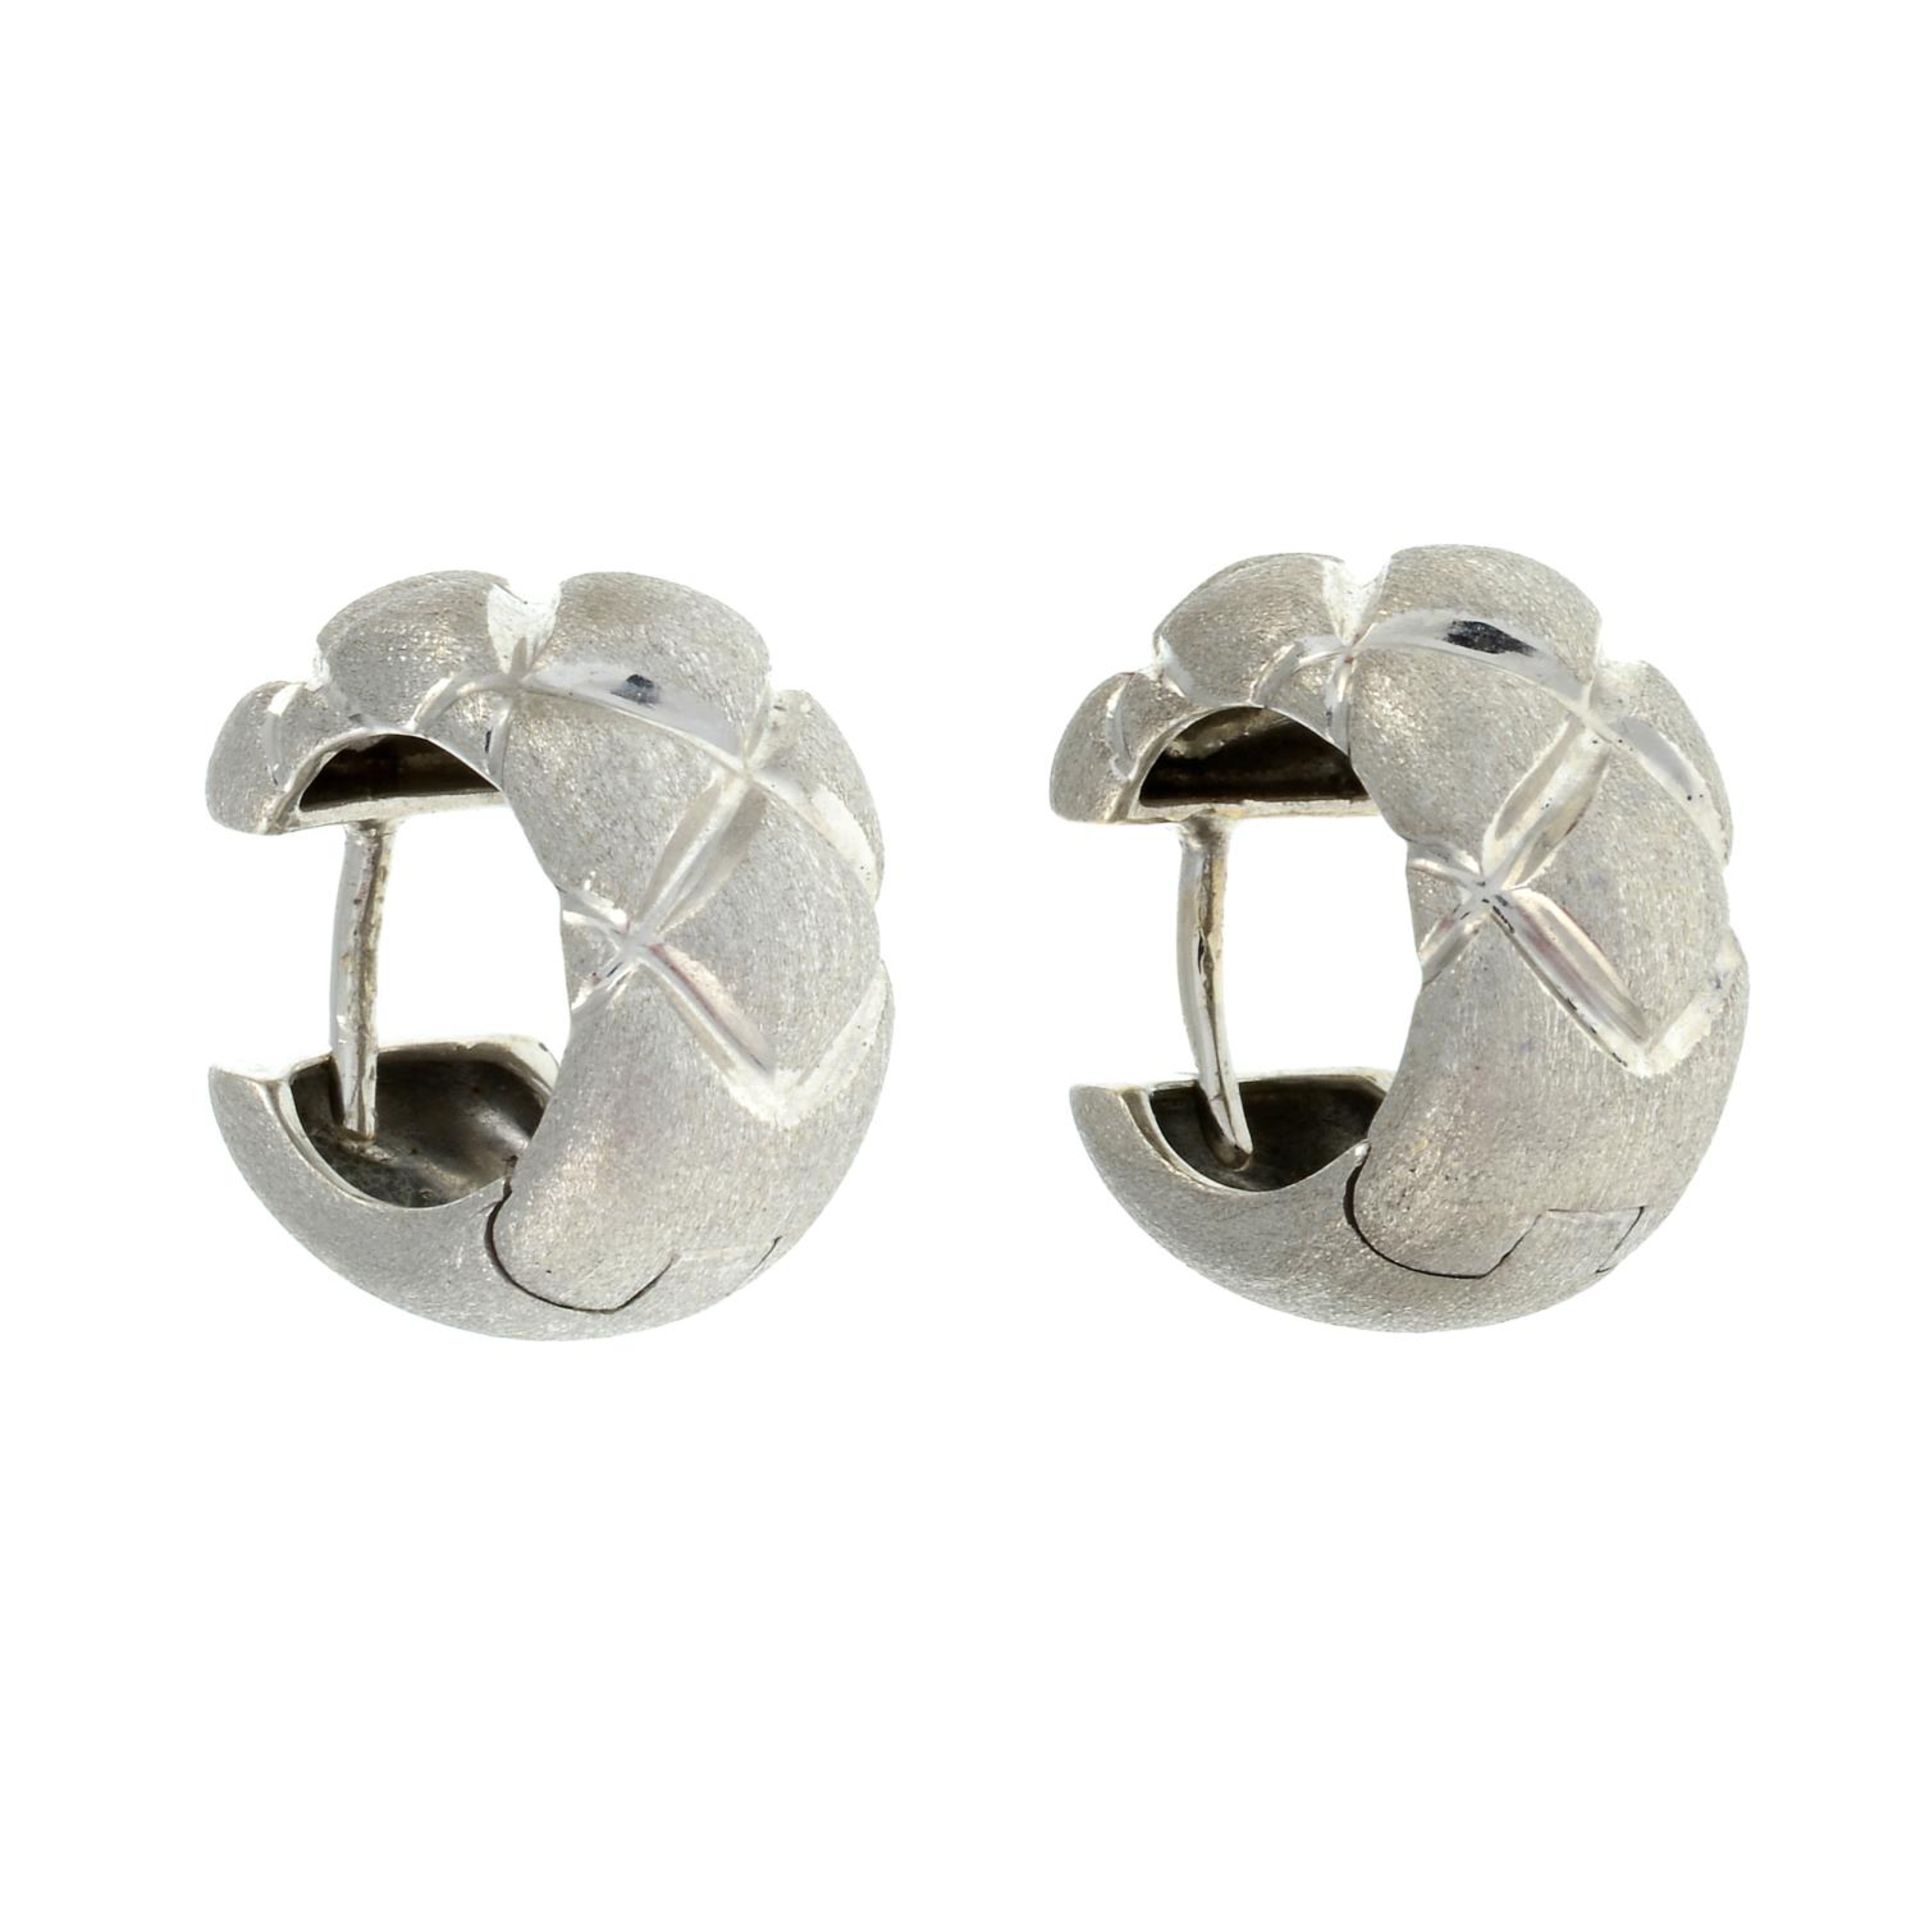 A pair of textured hoop earrings.Stamped 750.